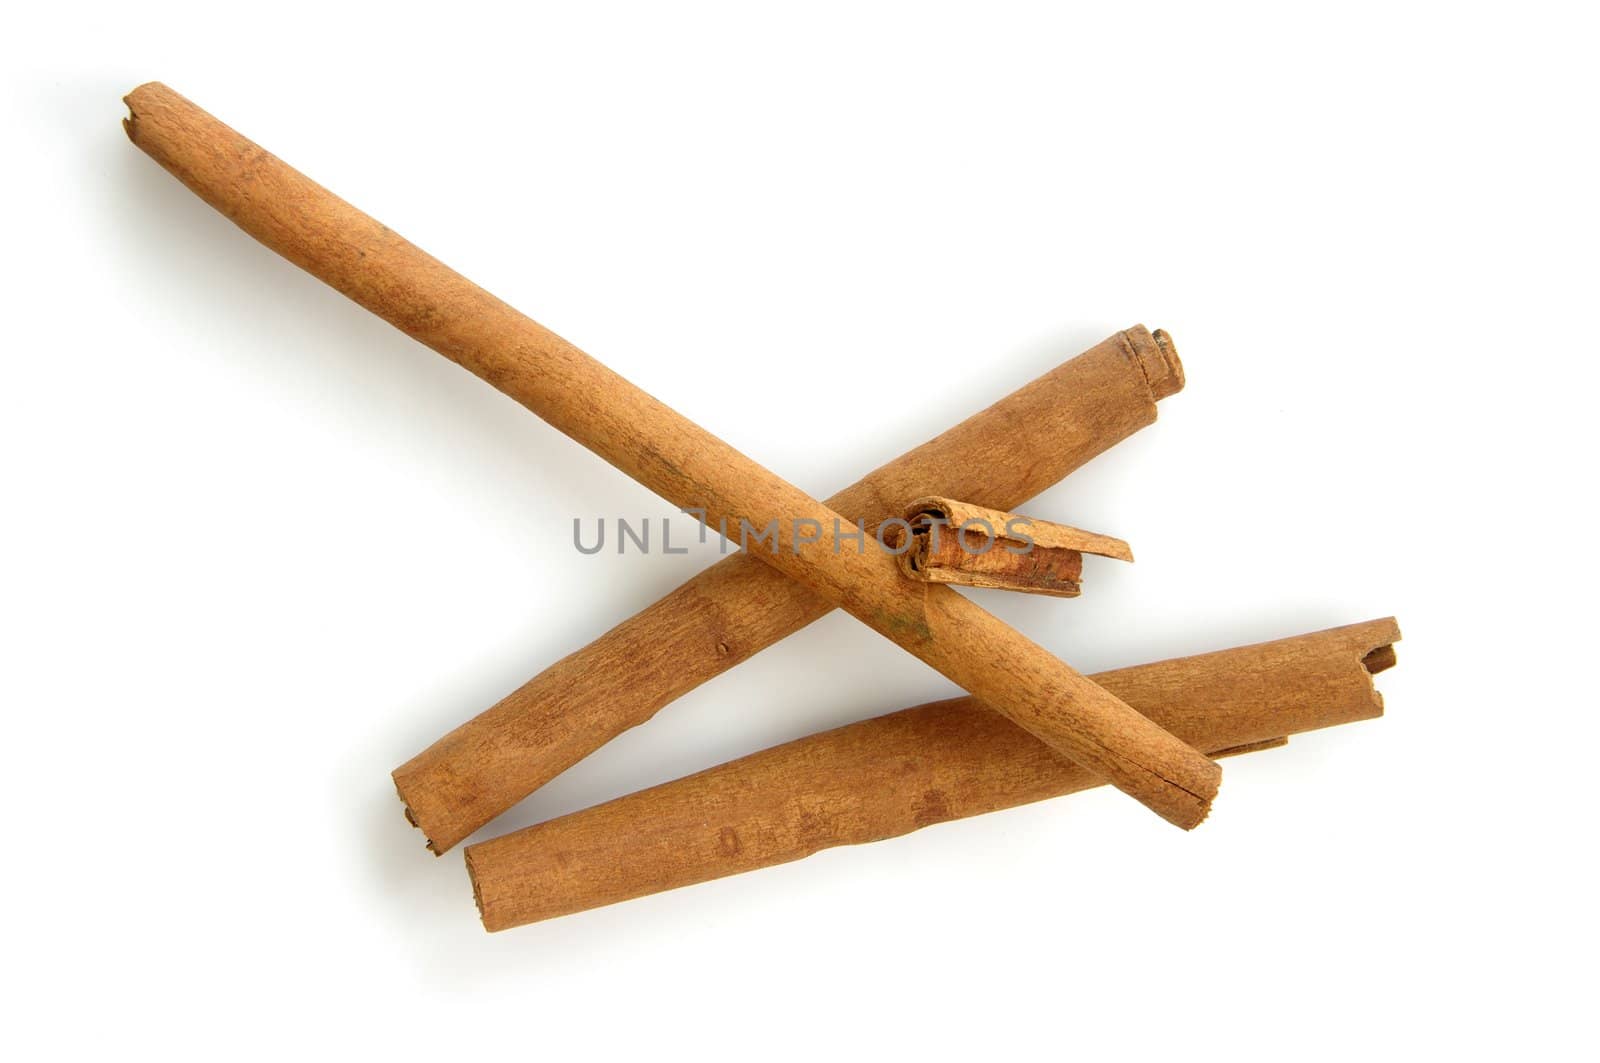 Sticks of Cinnamon (Cinnamomum). Shot on white